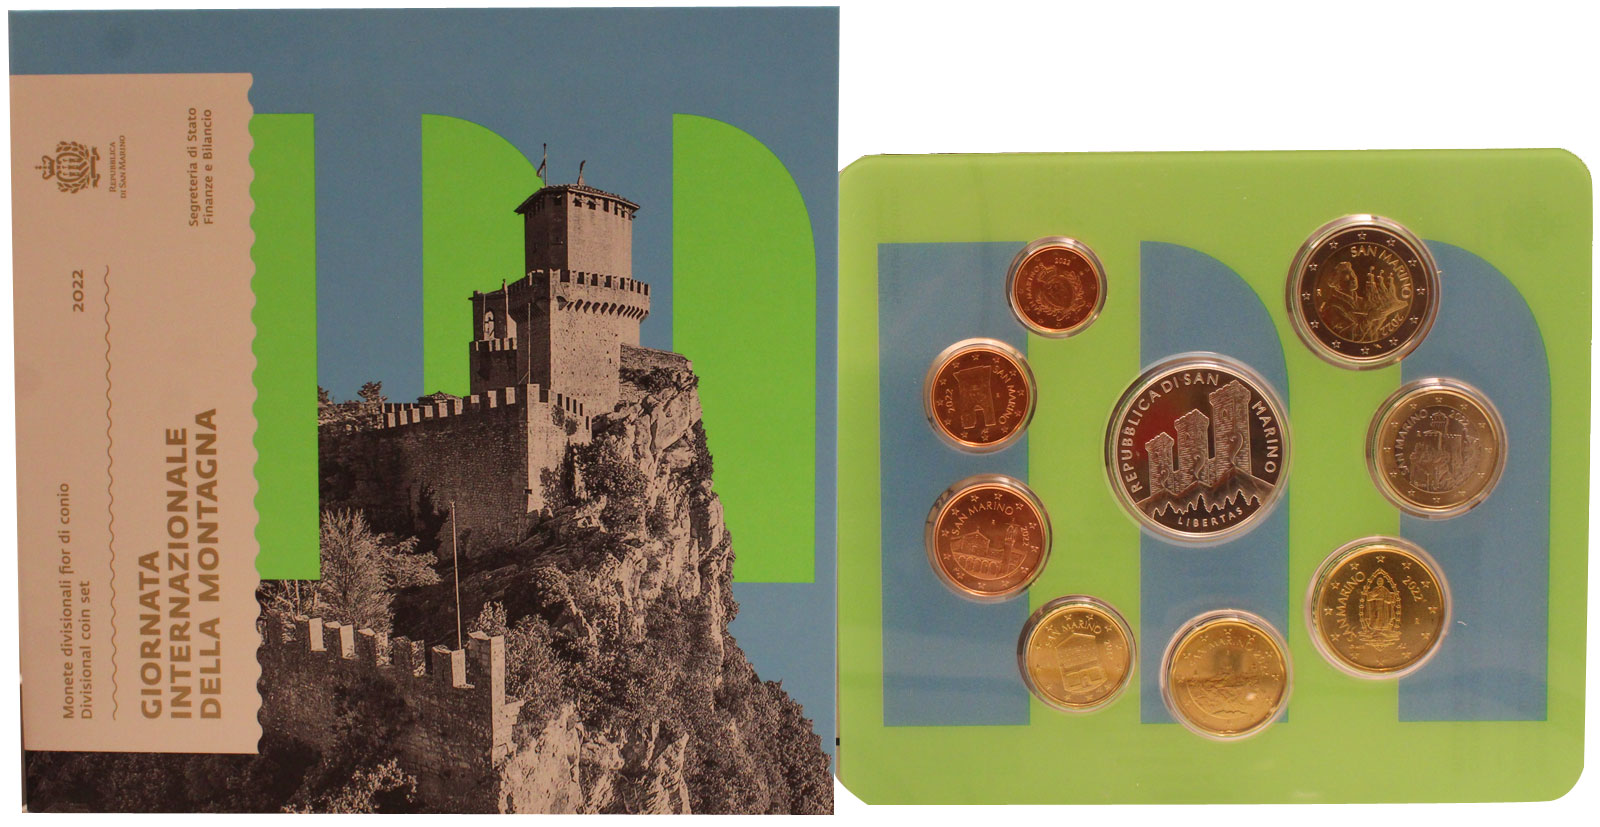 Serie completa di 9 monete con 5 euro in argento "Giornata internazionale della montagna"